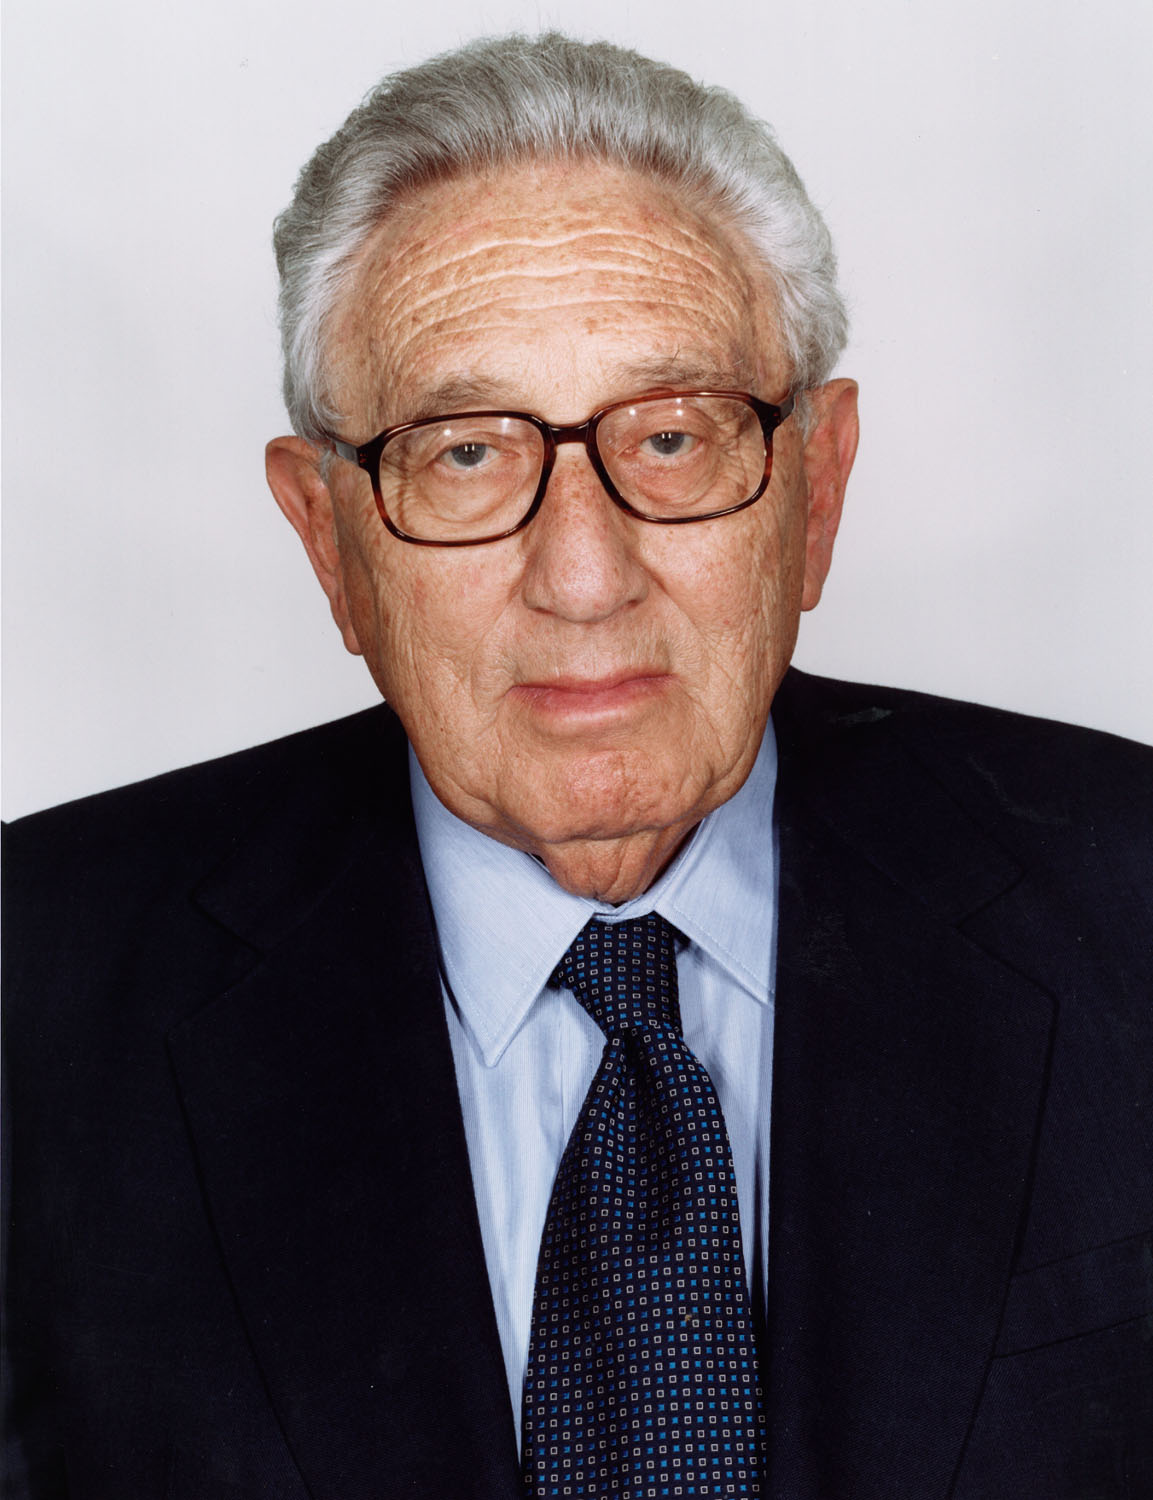  New York Magazine - Henry Kissinger 